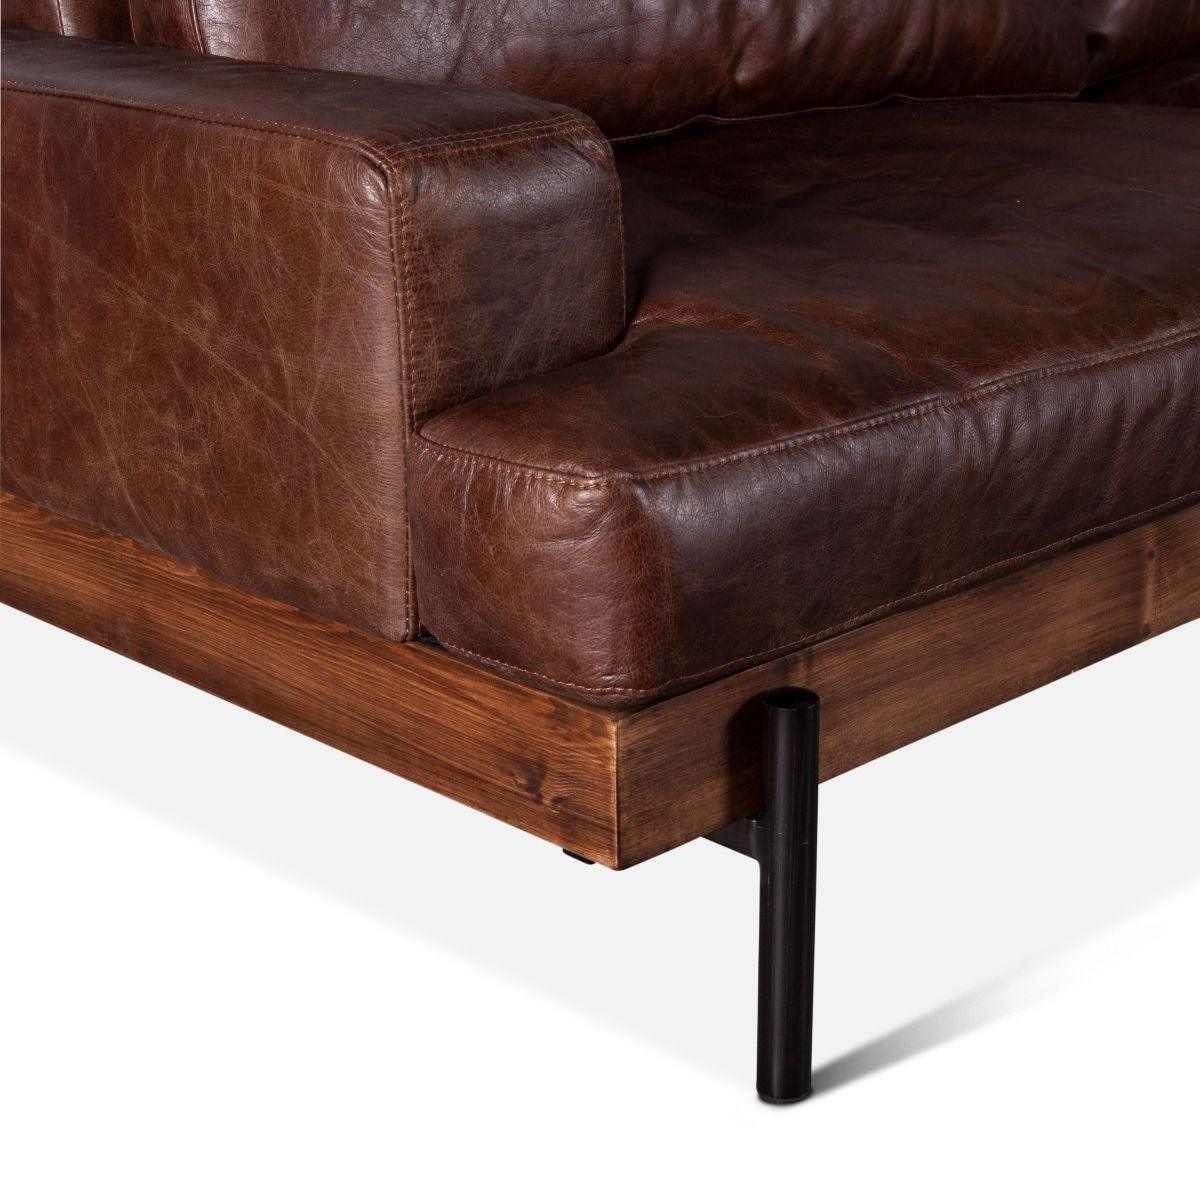 Portofino Industrial Brown Leather Sofa - Belle Escape